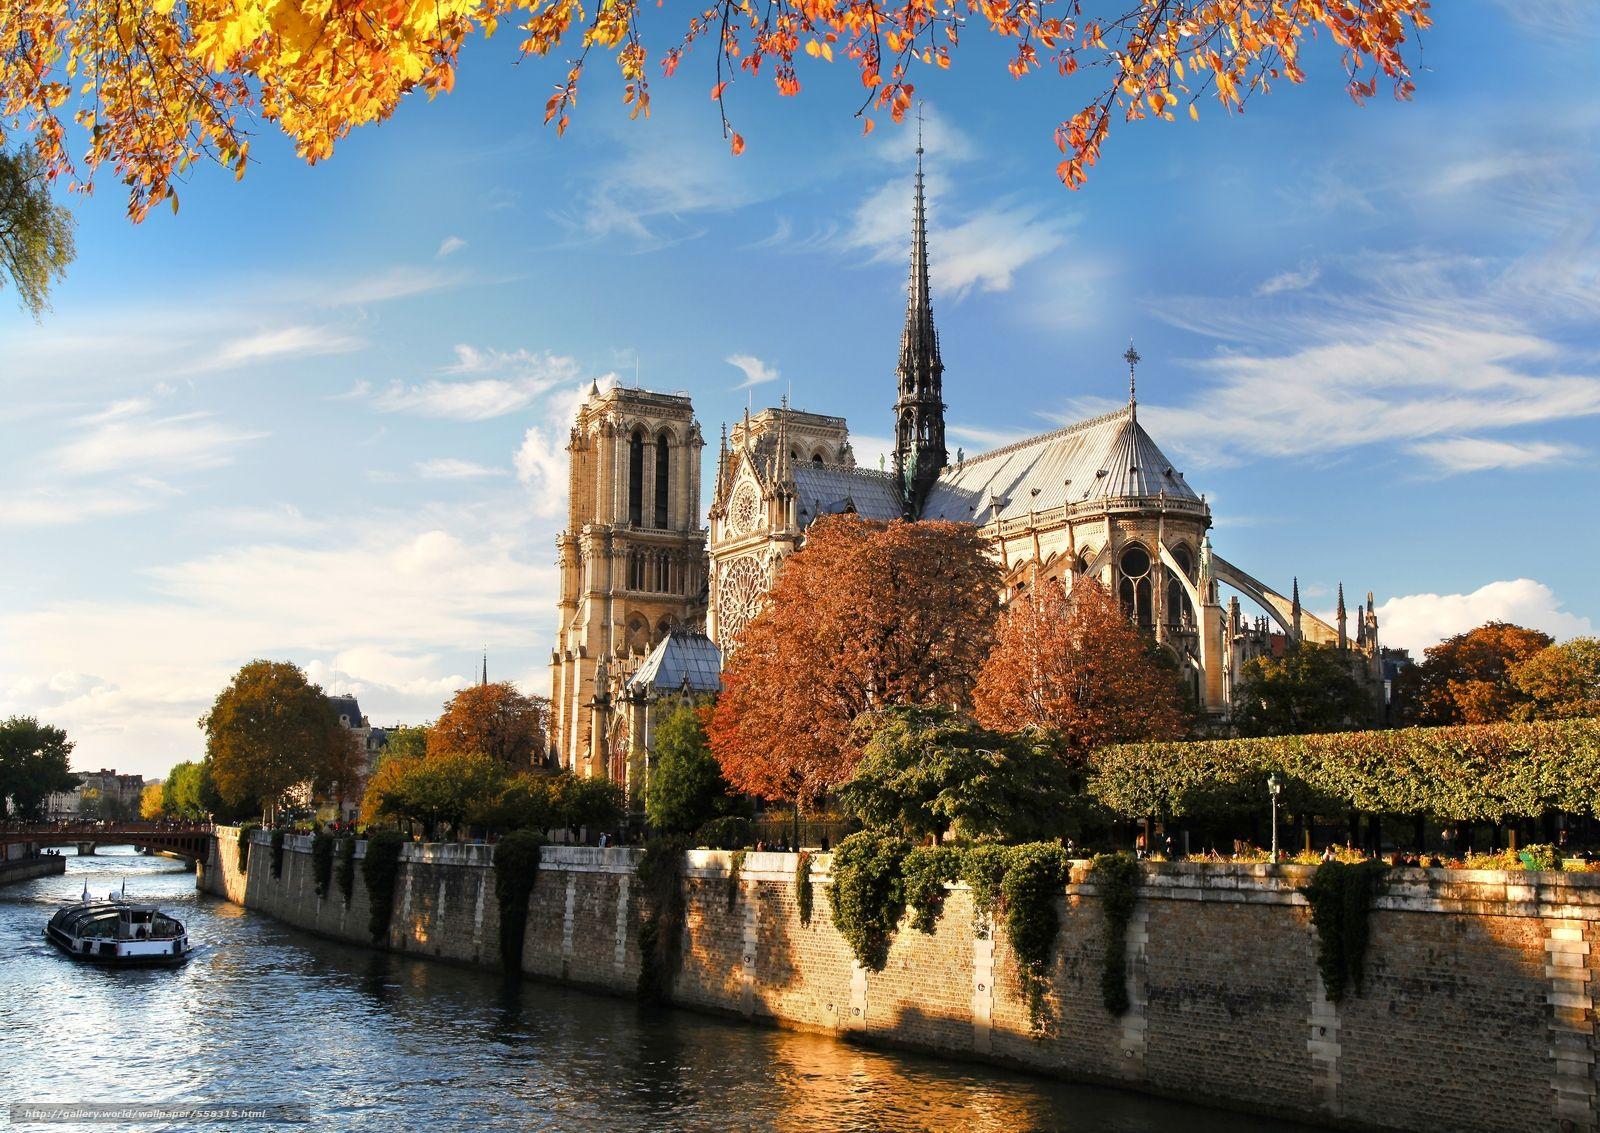 Download wallpaper Notre Dame de Paris, Notre Dame Cathedral